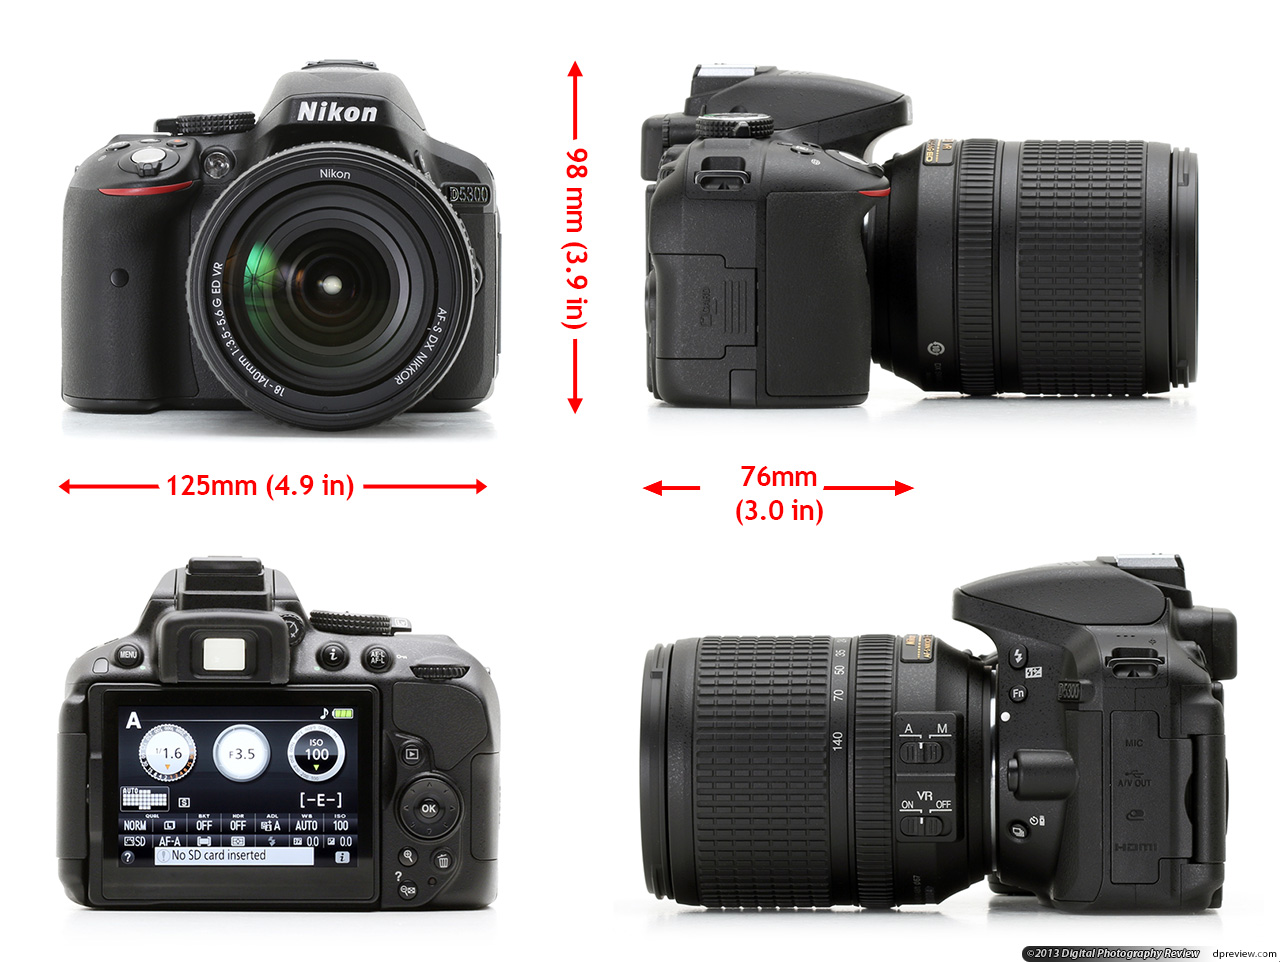 Đánh giá cách sử dụng máy ảnh Nikon D5300 - Blogs các sản phẩm công